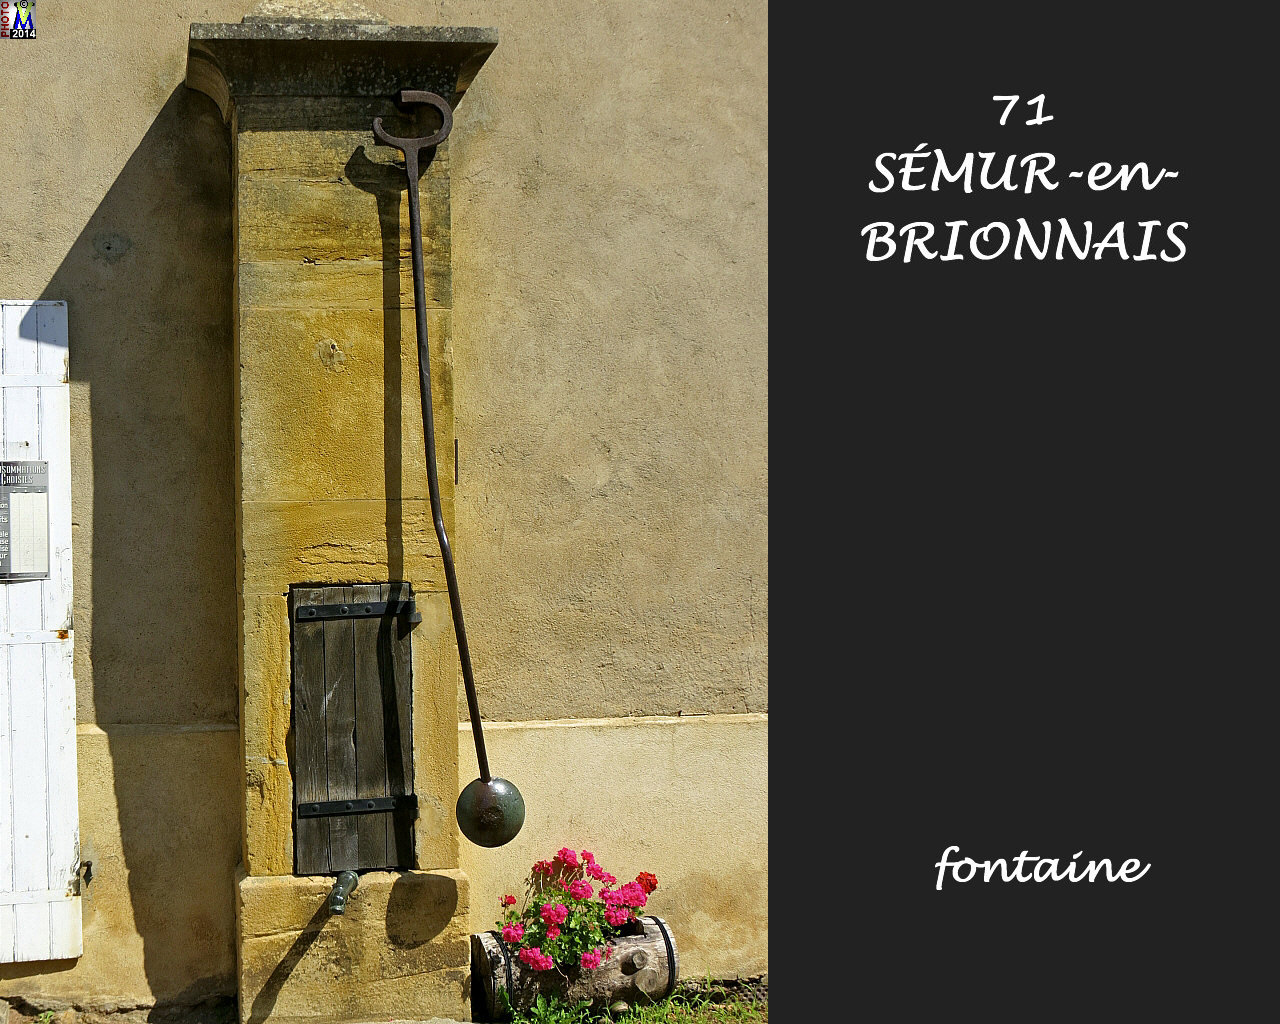 71SEMUR-BRIONNAIS-fontaine_100.jpg